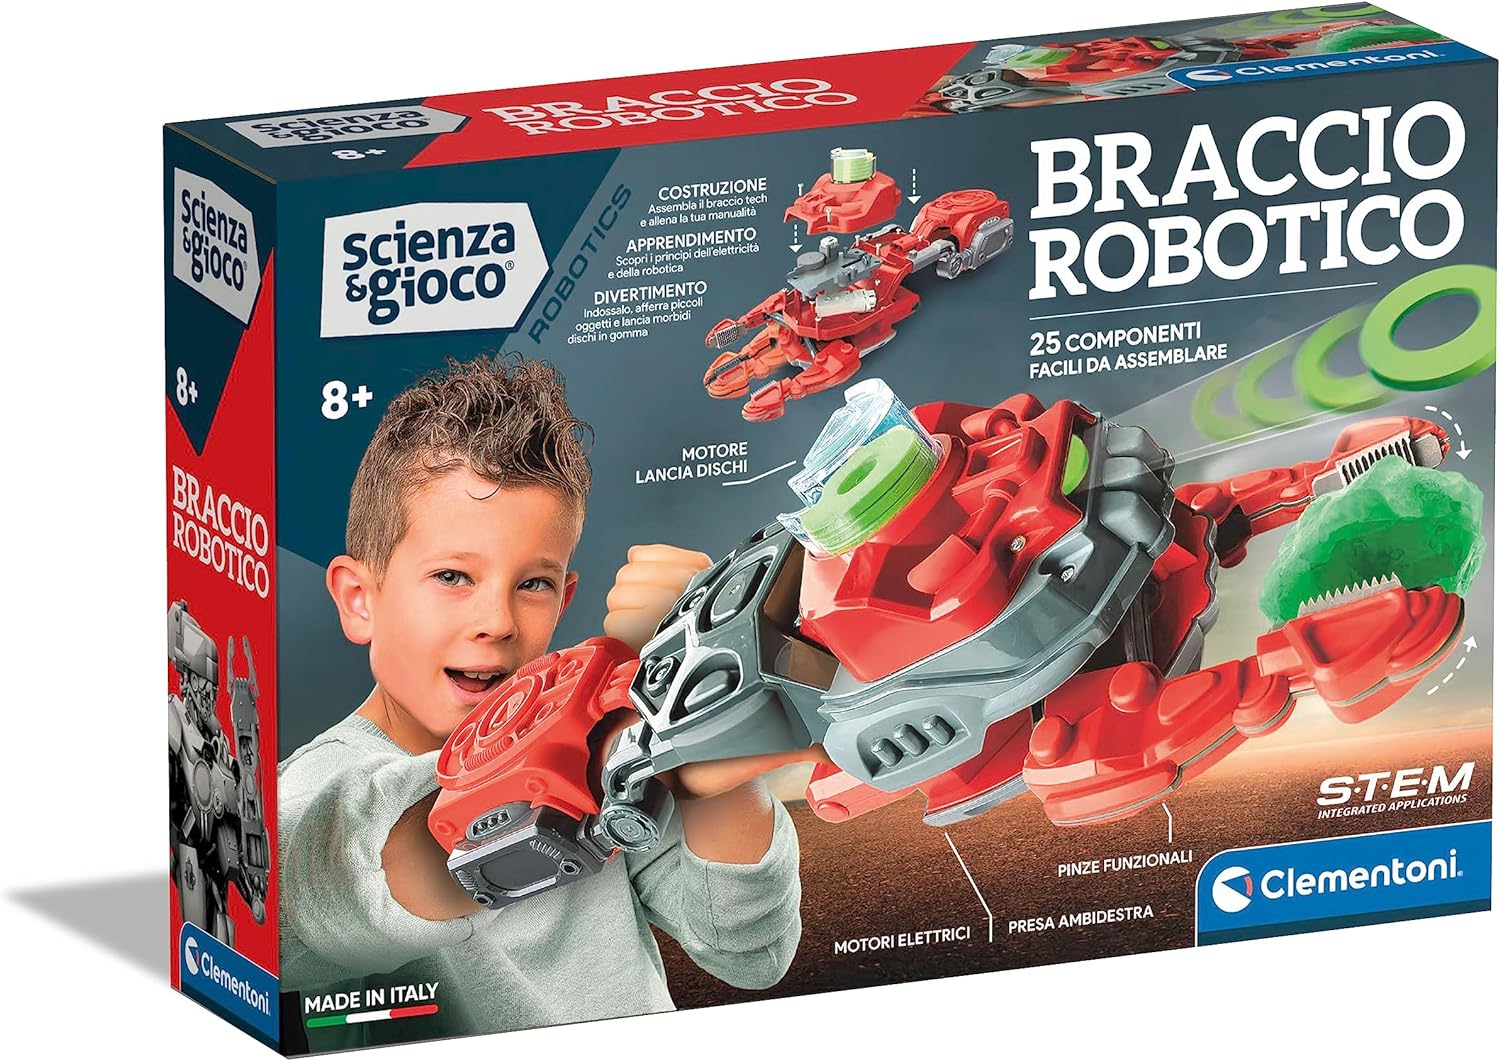 https://www.mistristore.com/239593/clementoni-19360-scienza-robotics-robot-meccanico-armatura-da-braccio-per-bambini-robotica-gioco-scientifico-8-anni.jpg?image=0